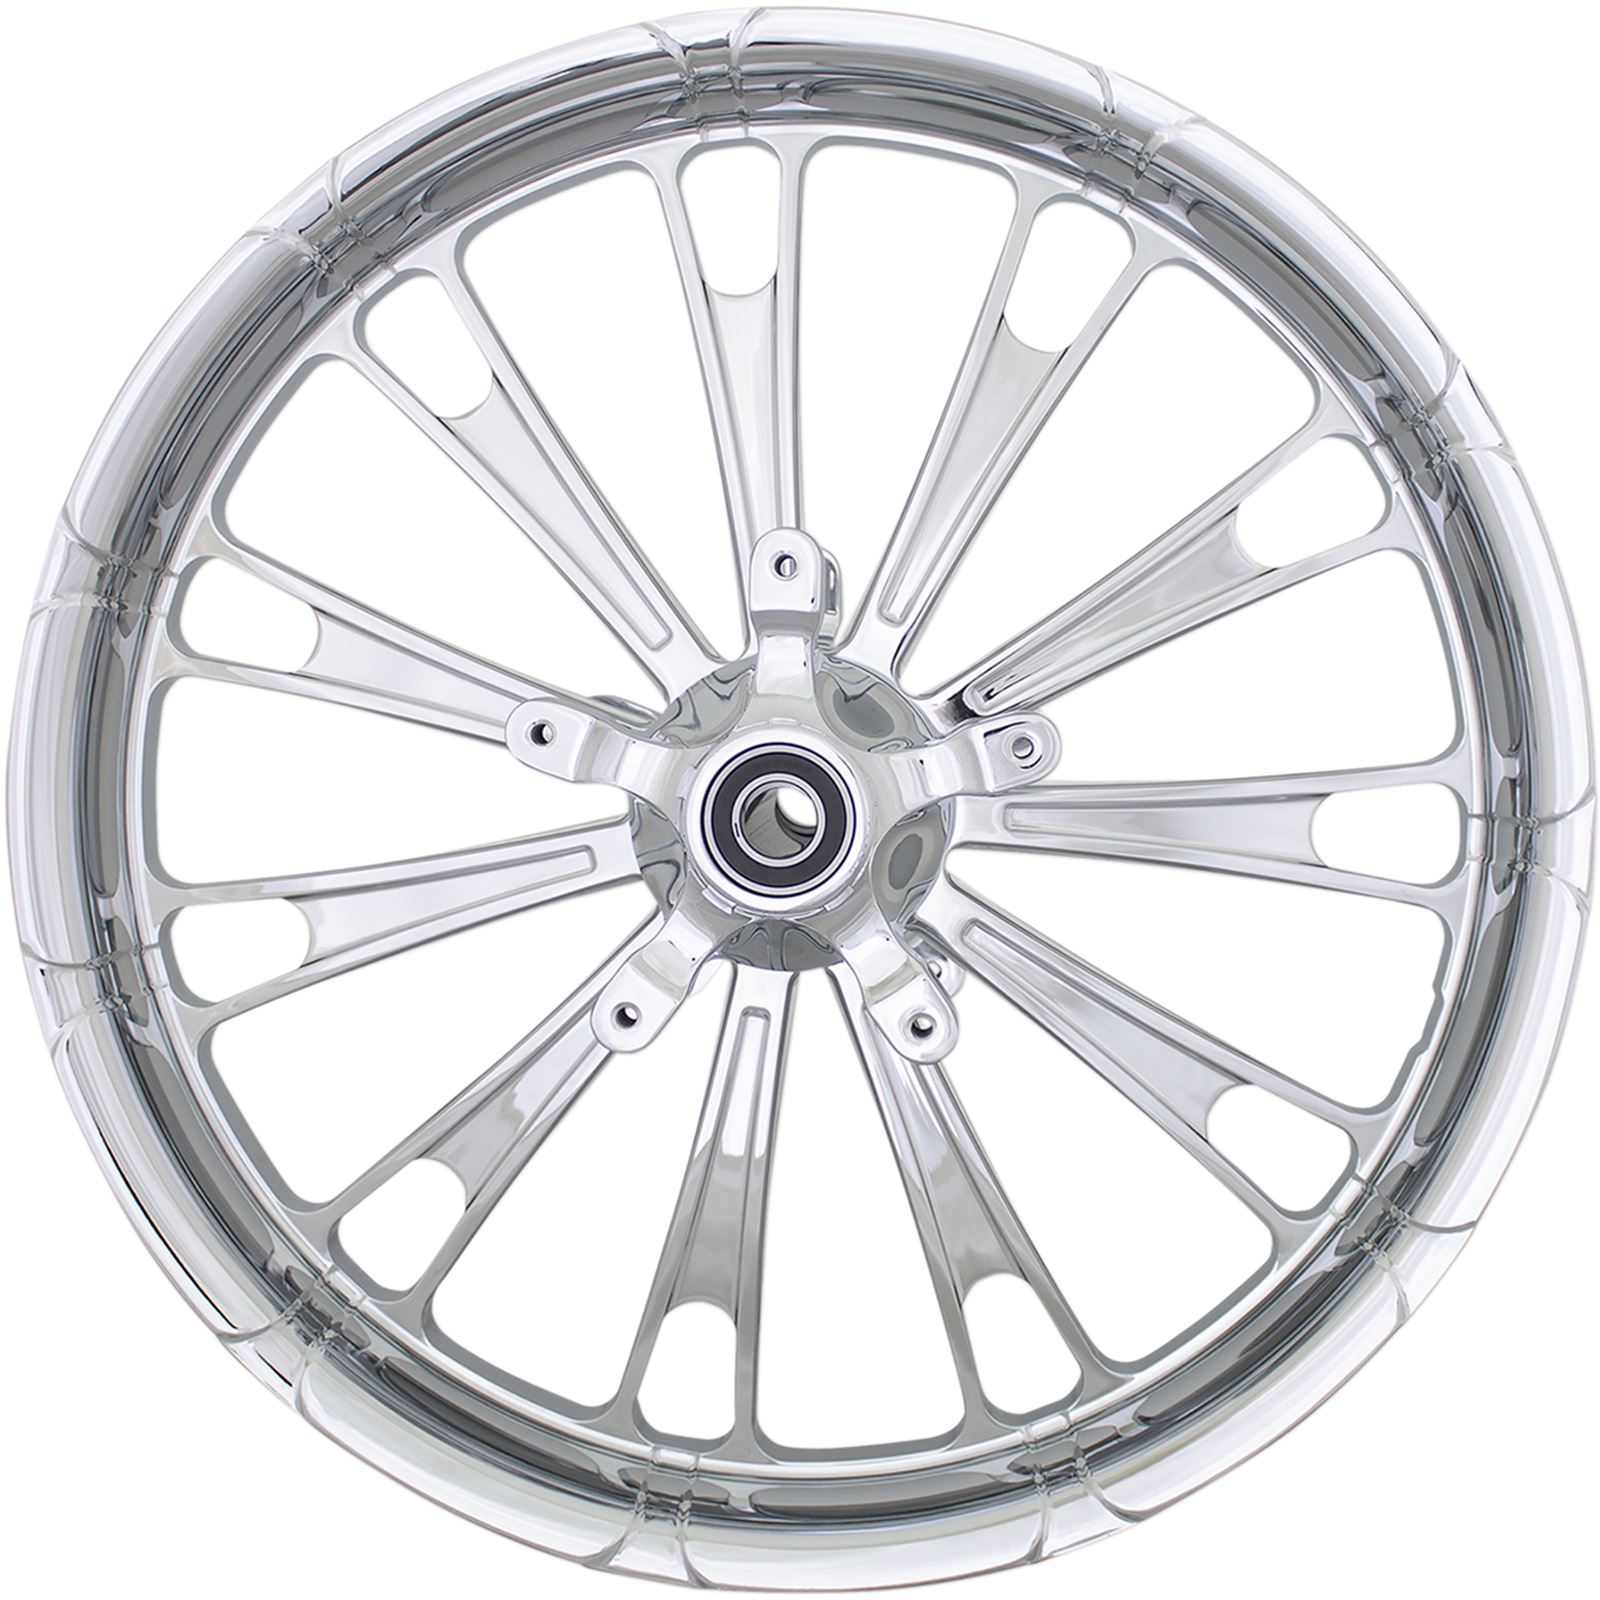 Coastal Moto Front Wheel - Fuel - Dual Disc/ABS - Chrome - 21"x3.25" - FL